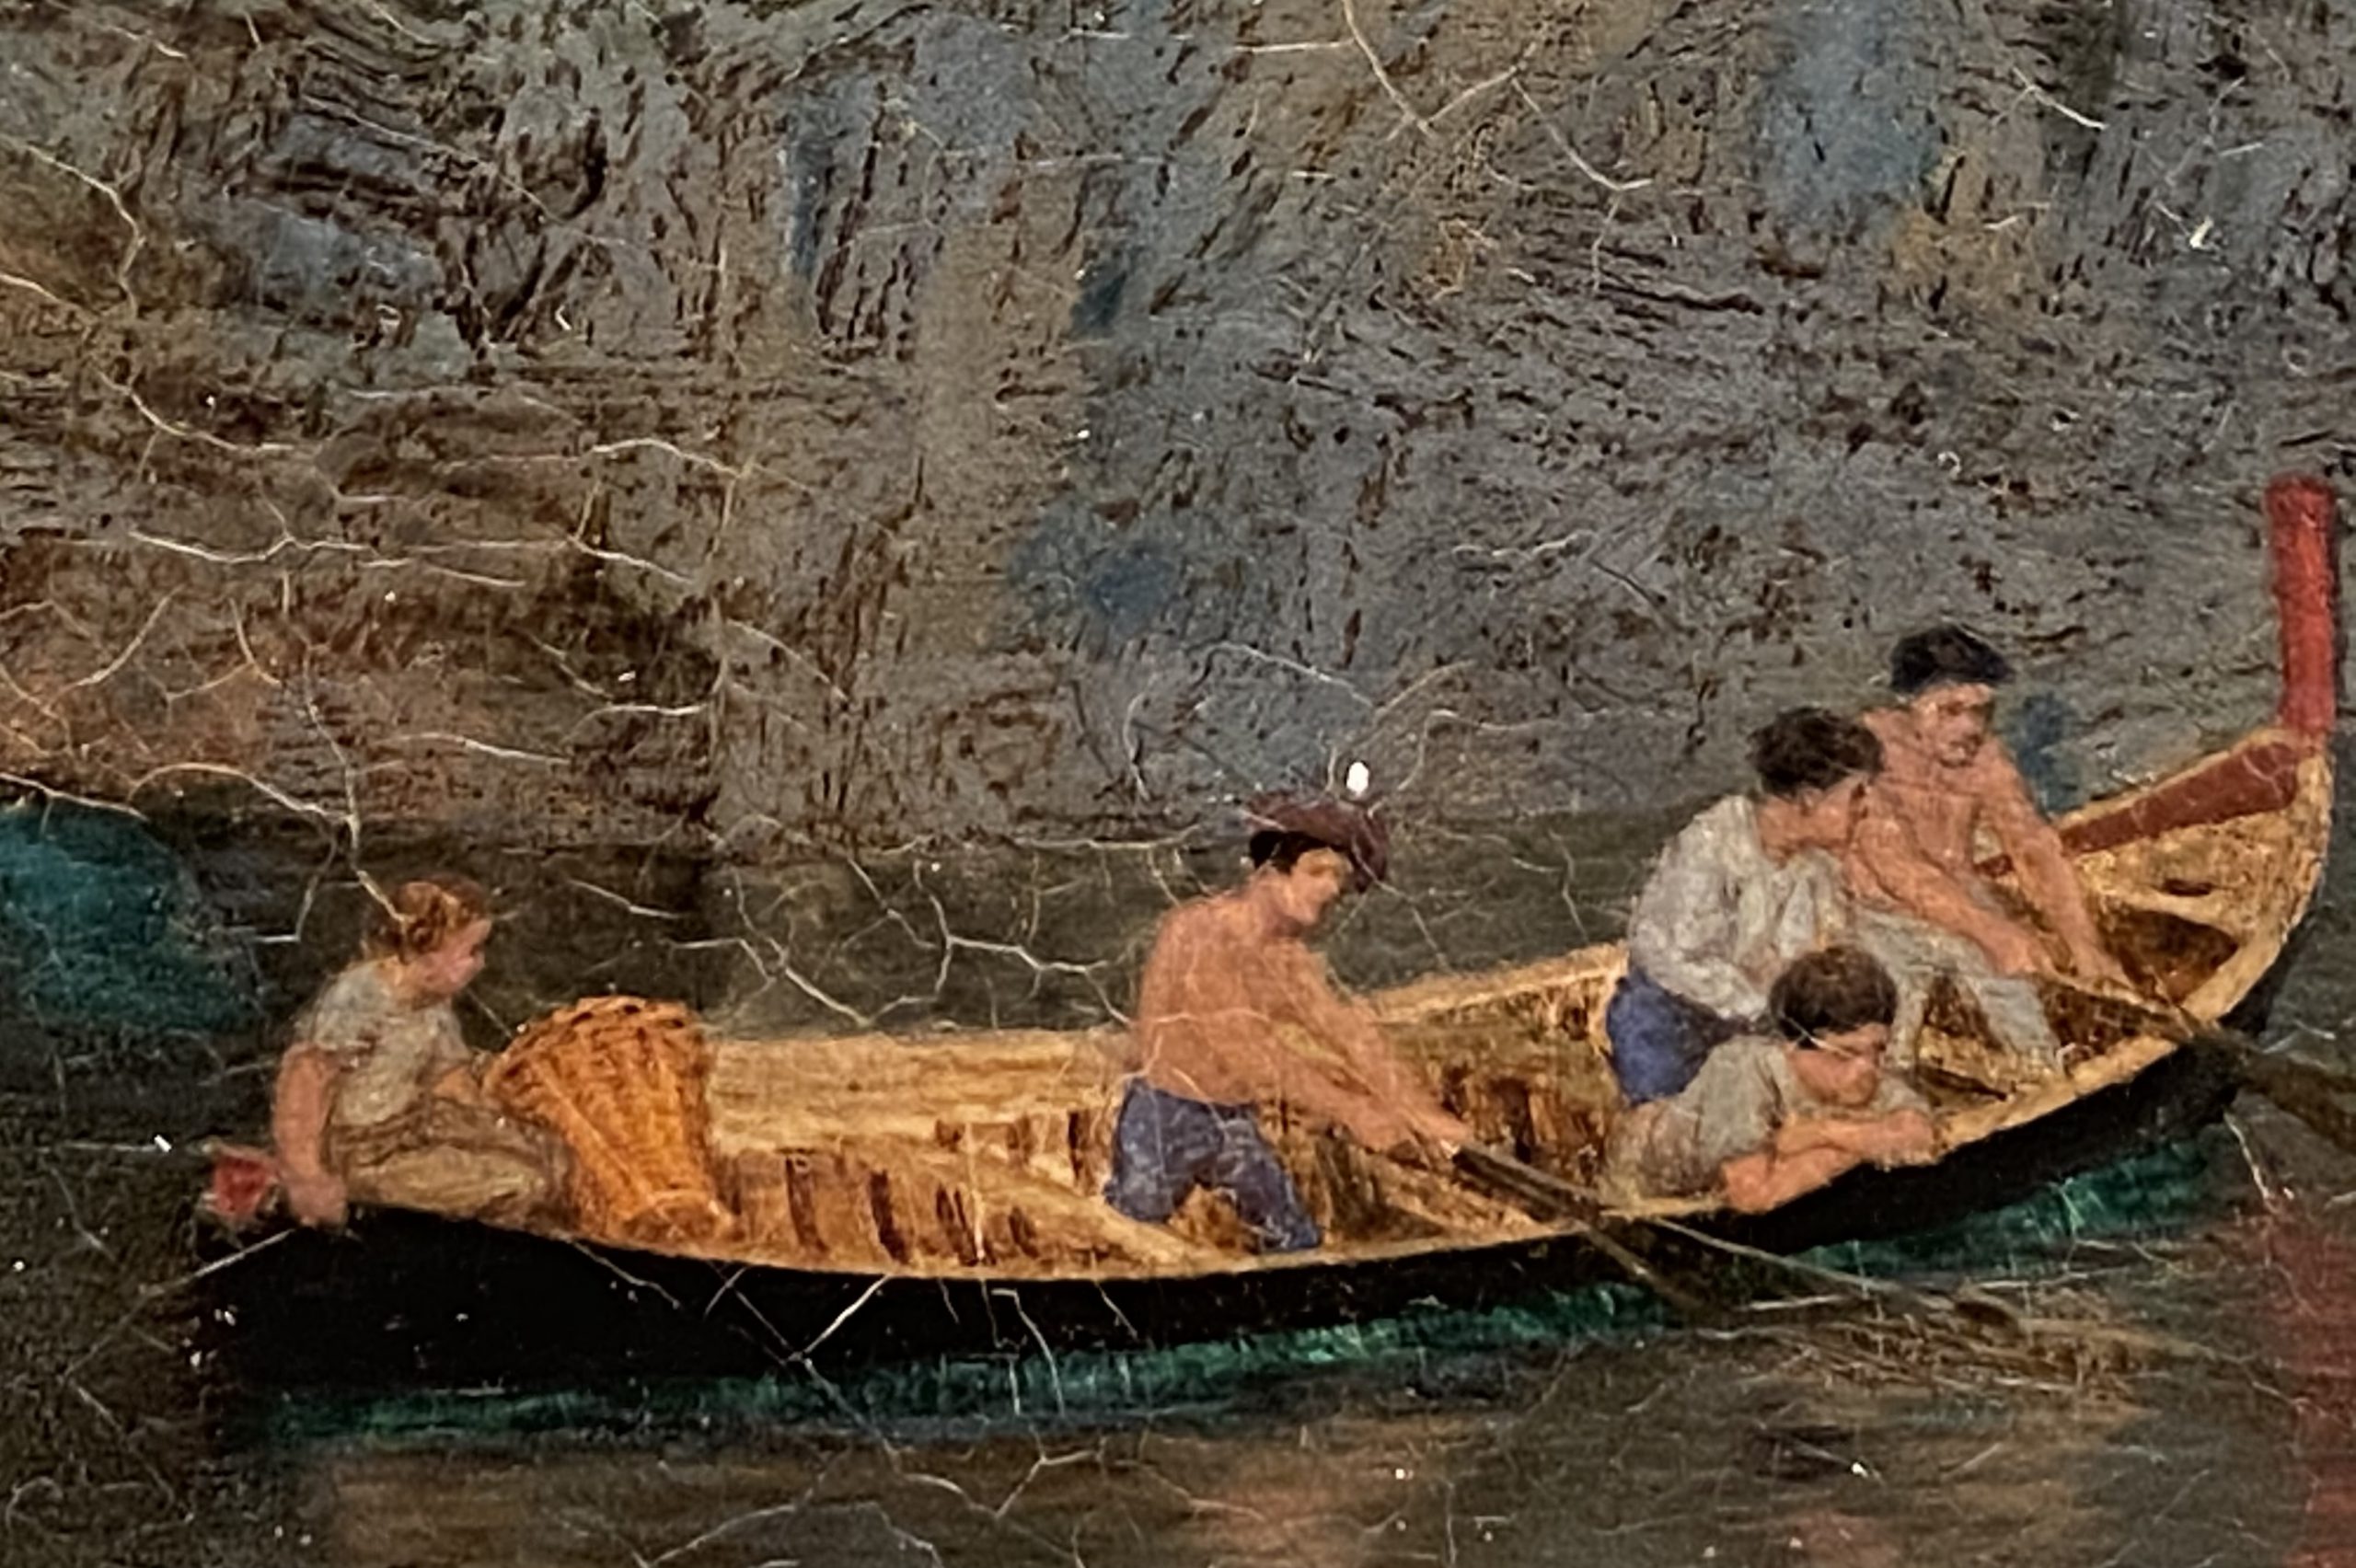 ナポリ湾のマッサ-ジョン・ブレット-イギリス-特別展【光影浮空-欧州絵画500年】-成都博物館